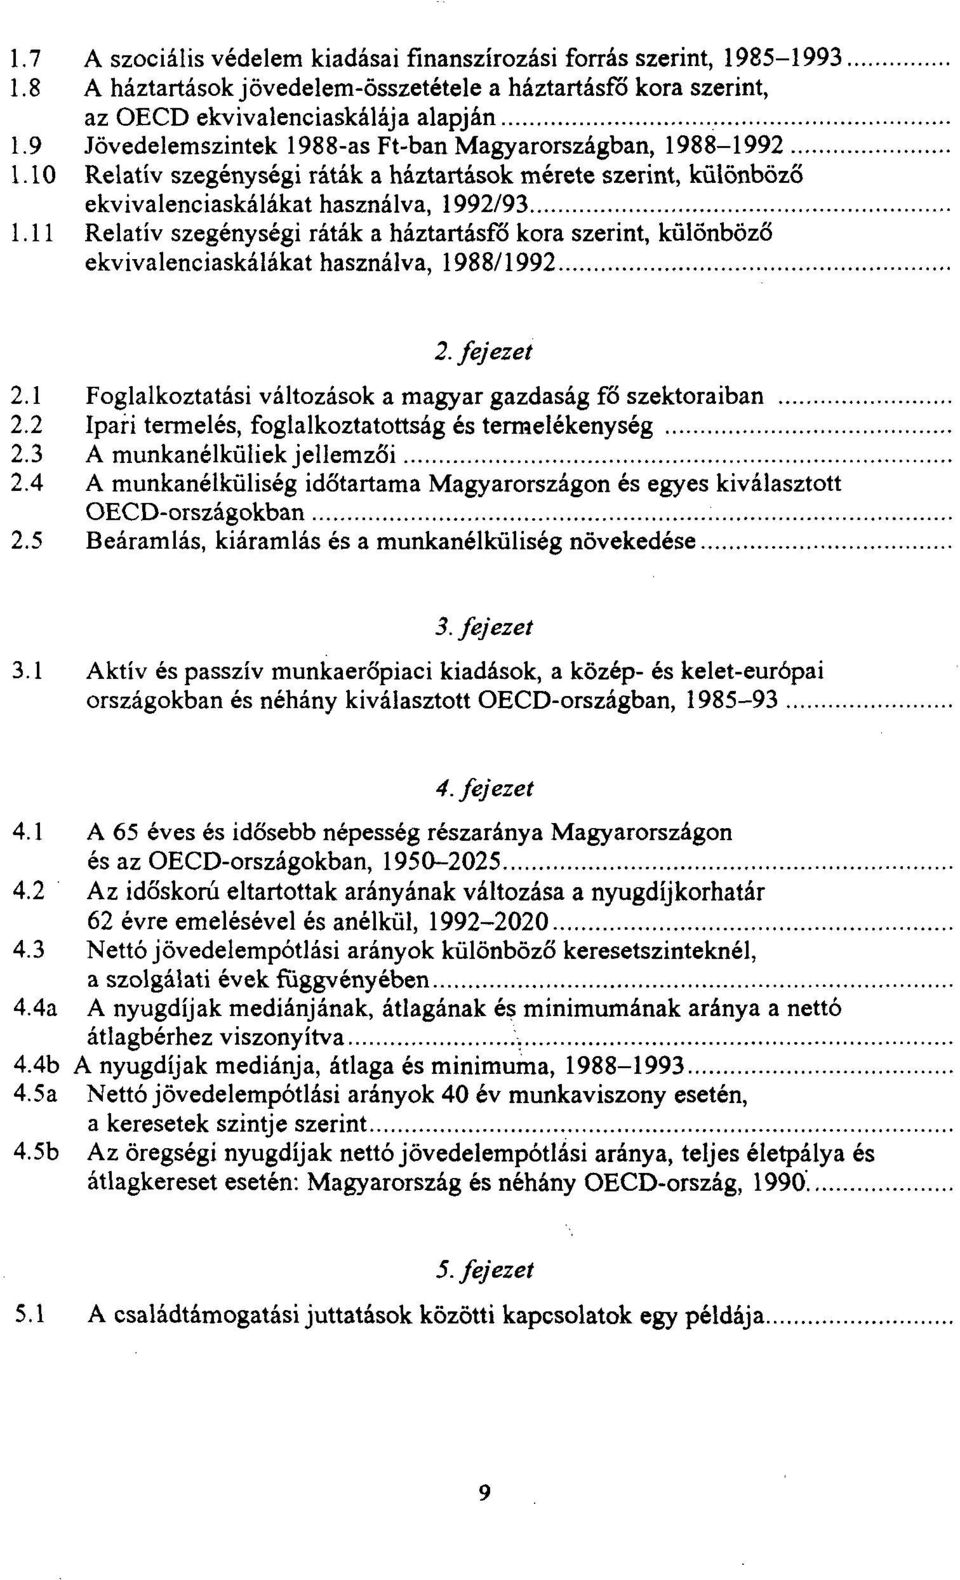 11 Relatív szegénységi ráták a háztartásfő kora szerint, különböző ekvivalenciaskálákat használva, 1988/1992 2. fejezet 2.1 Foglalkoztatási változások a magyar gazdaság fő szektoraiban 2.